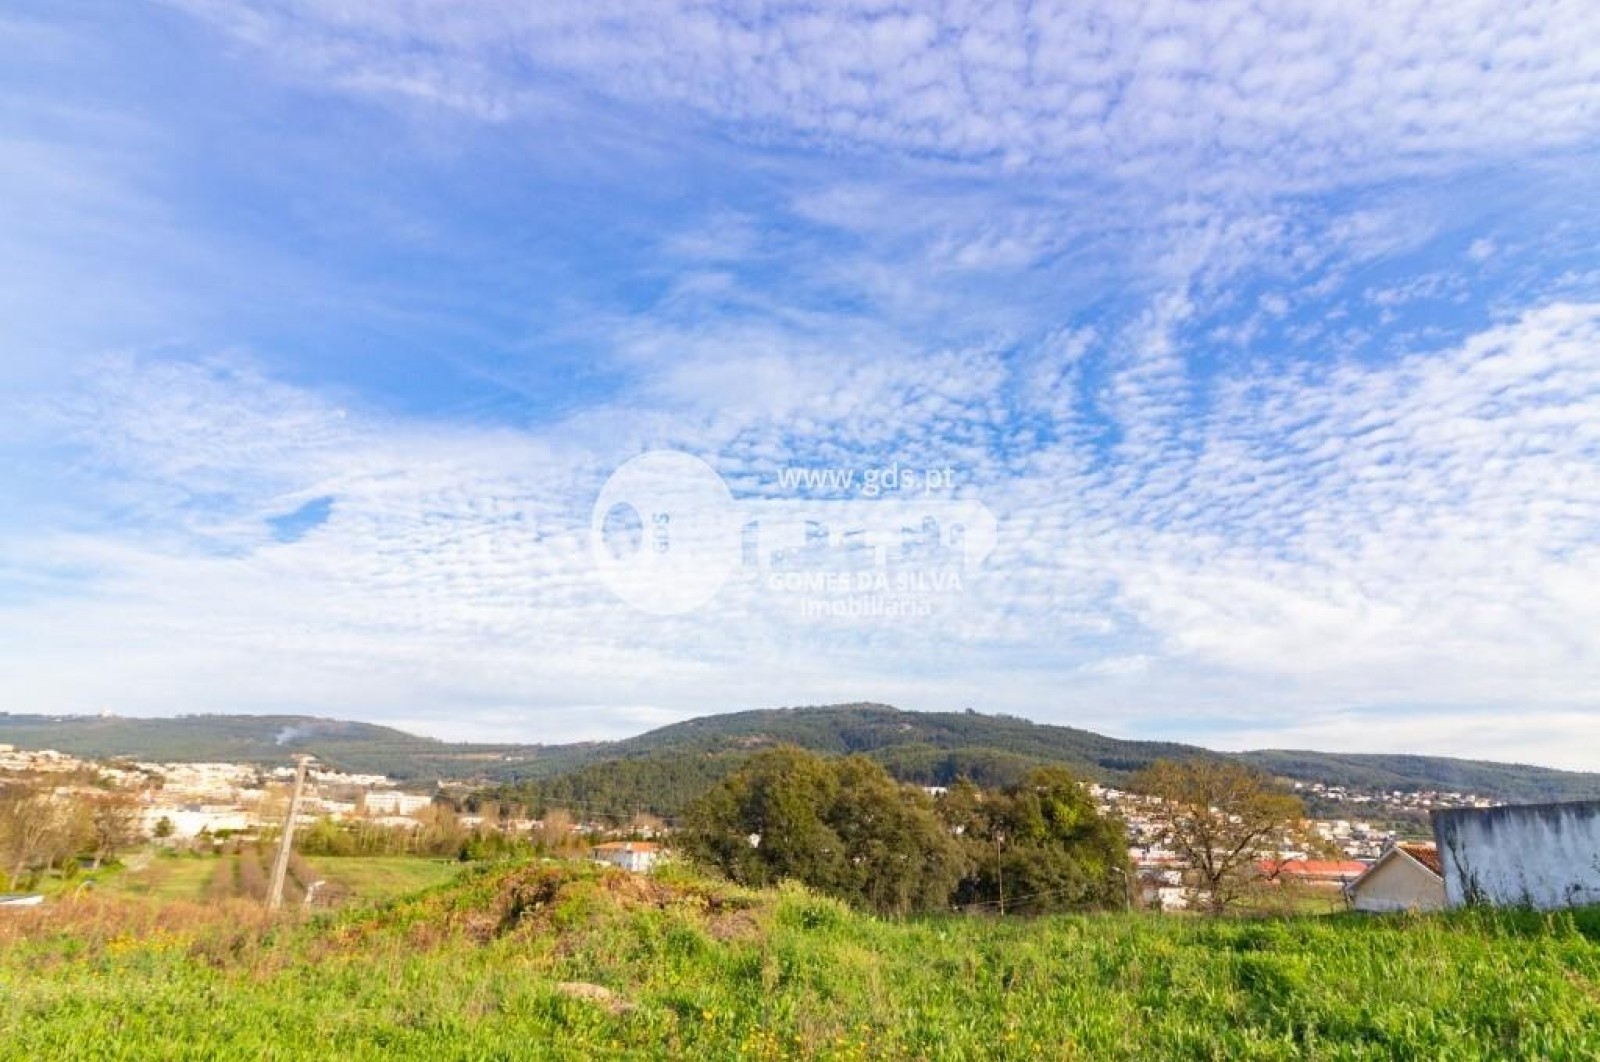 Terreno para Venda em Lomar e Arcos, Braga, Braga - Imagem 6